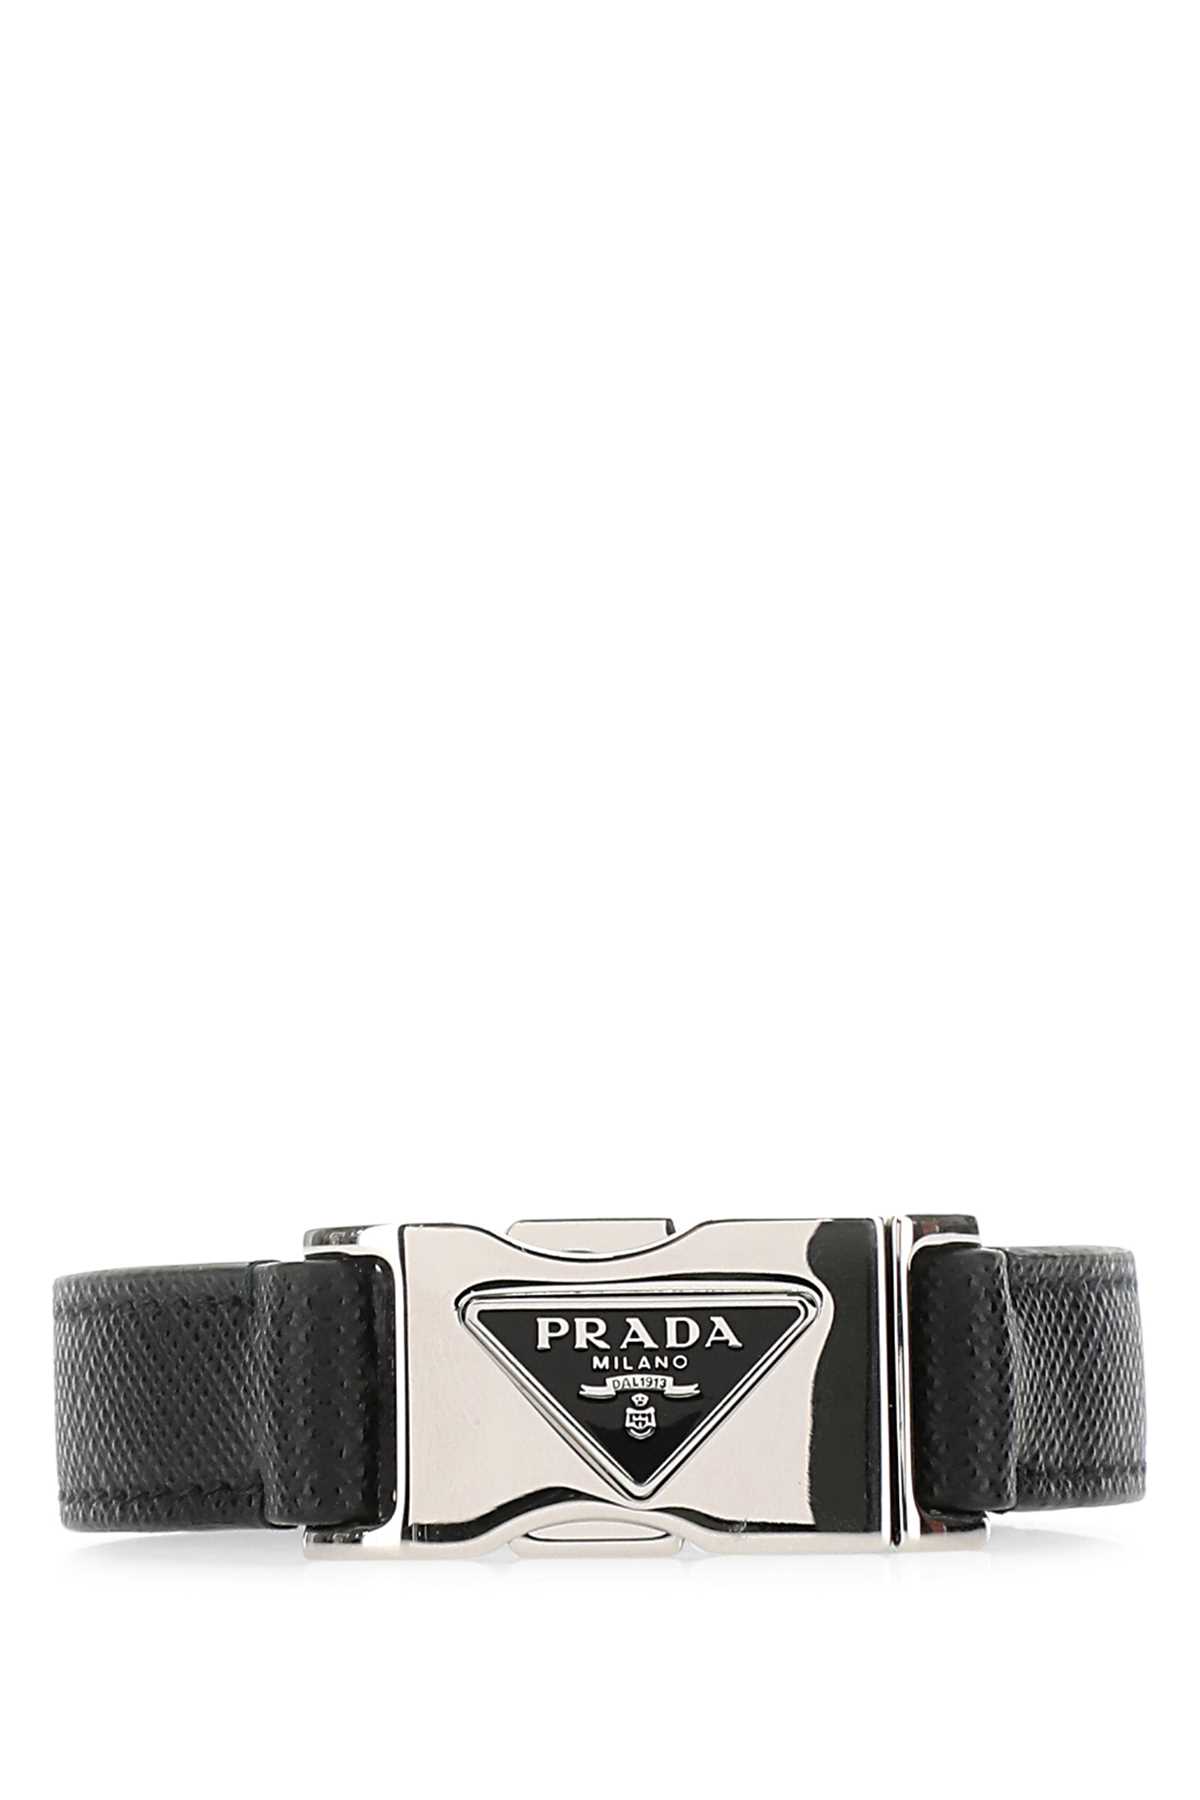 Prada Black Leather Bracelet In F0002